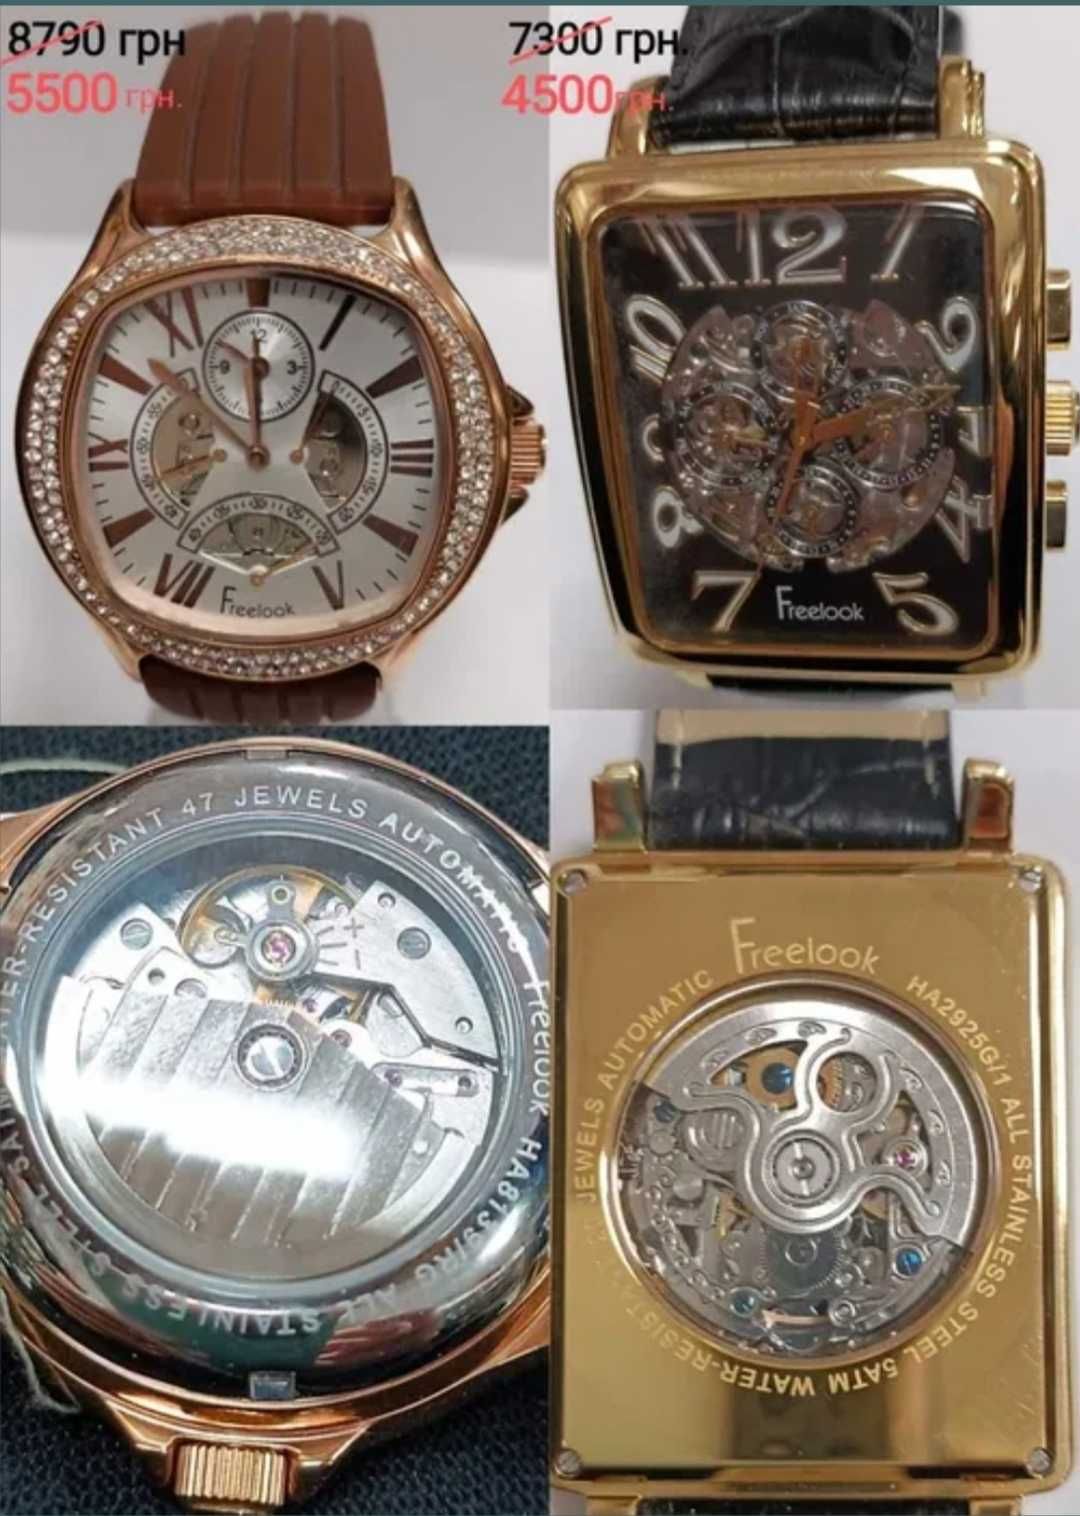 Распродажа механических часов Swiss made, Romanson,Orient, Ingersoll